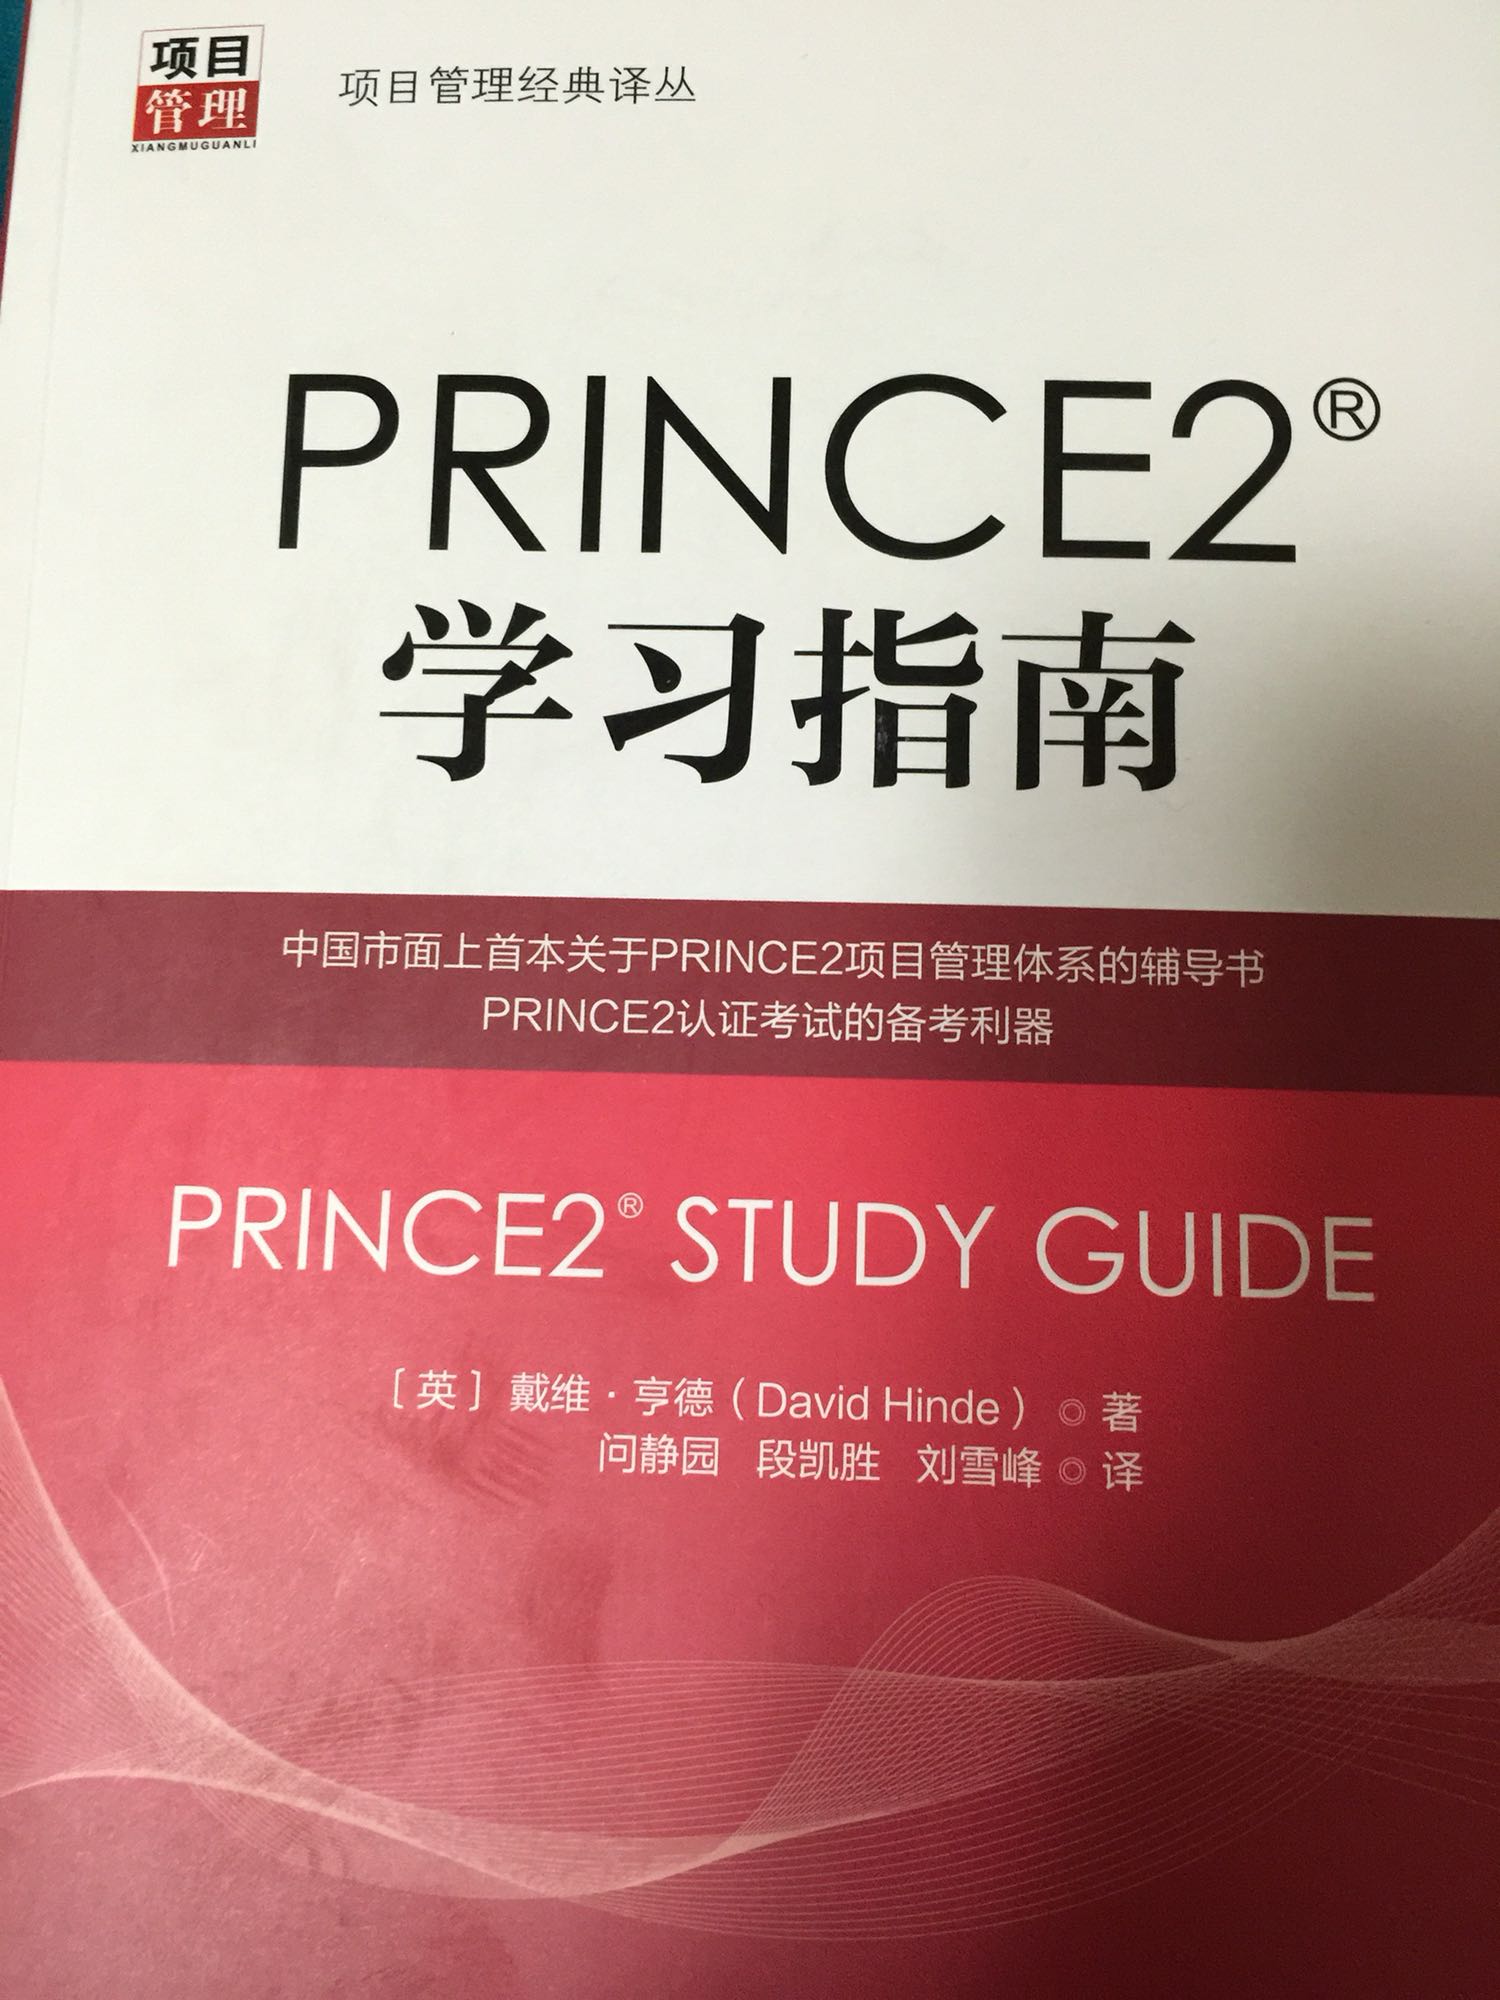 　　《PRINCE2学习指南》用实际案例将PRINCE2项目管理体系实施过程的7原则、7主题和7流程串联起来，以更易于理解的方式解读了《PRINCE2成功的项目管理（2009年）》的核心内容，提供了运用PRINCE2进行项目管理必需的工具和技术示例，并有针对性地为备考不同级别PRINCE2考试的考生提供了考点讲解、答题技巧和模拟试题，帮助考生夯实基础，自我检测。